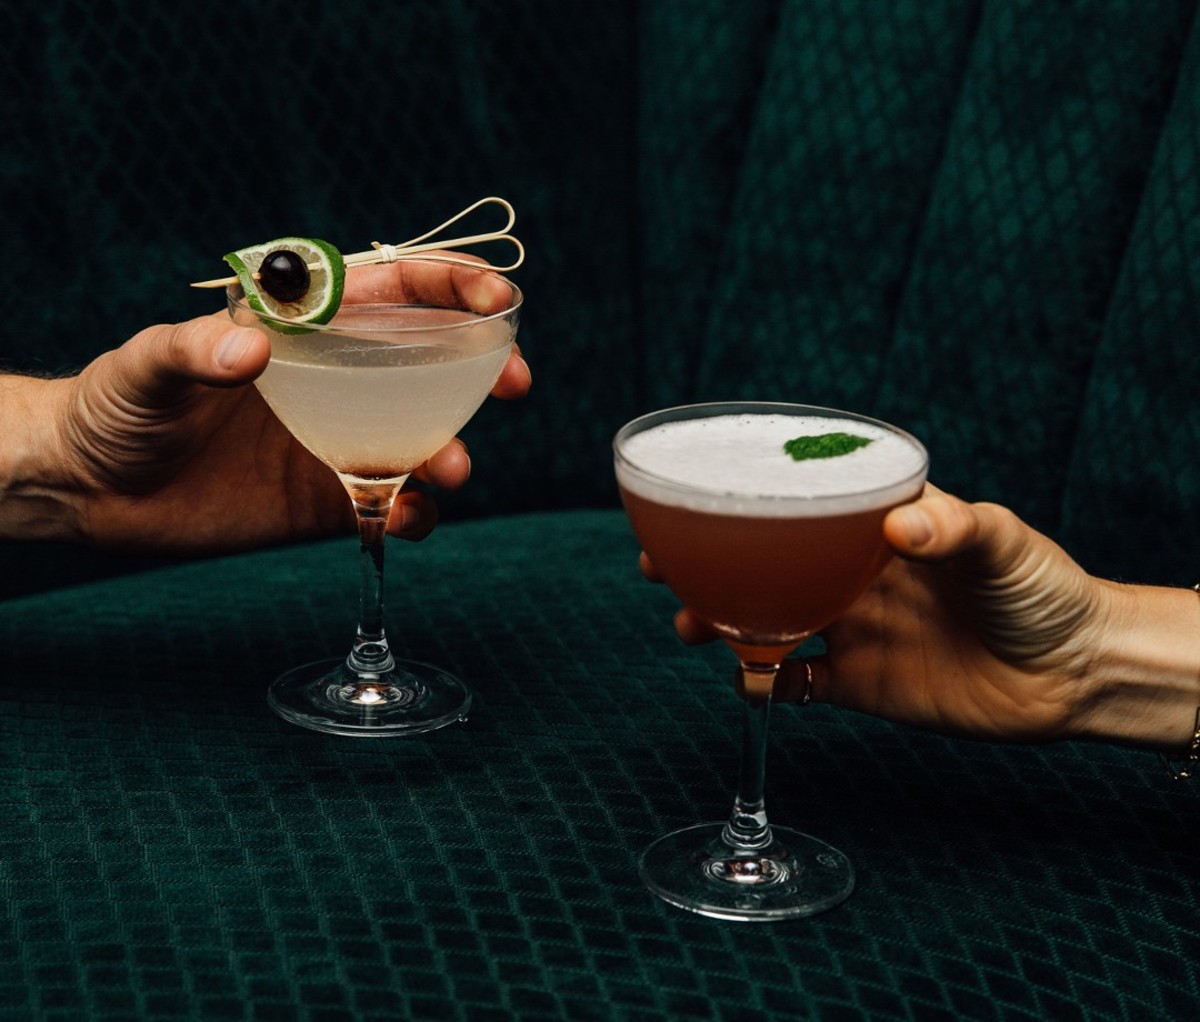 Hands holding cocktails against green velvet sofa